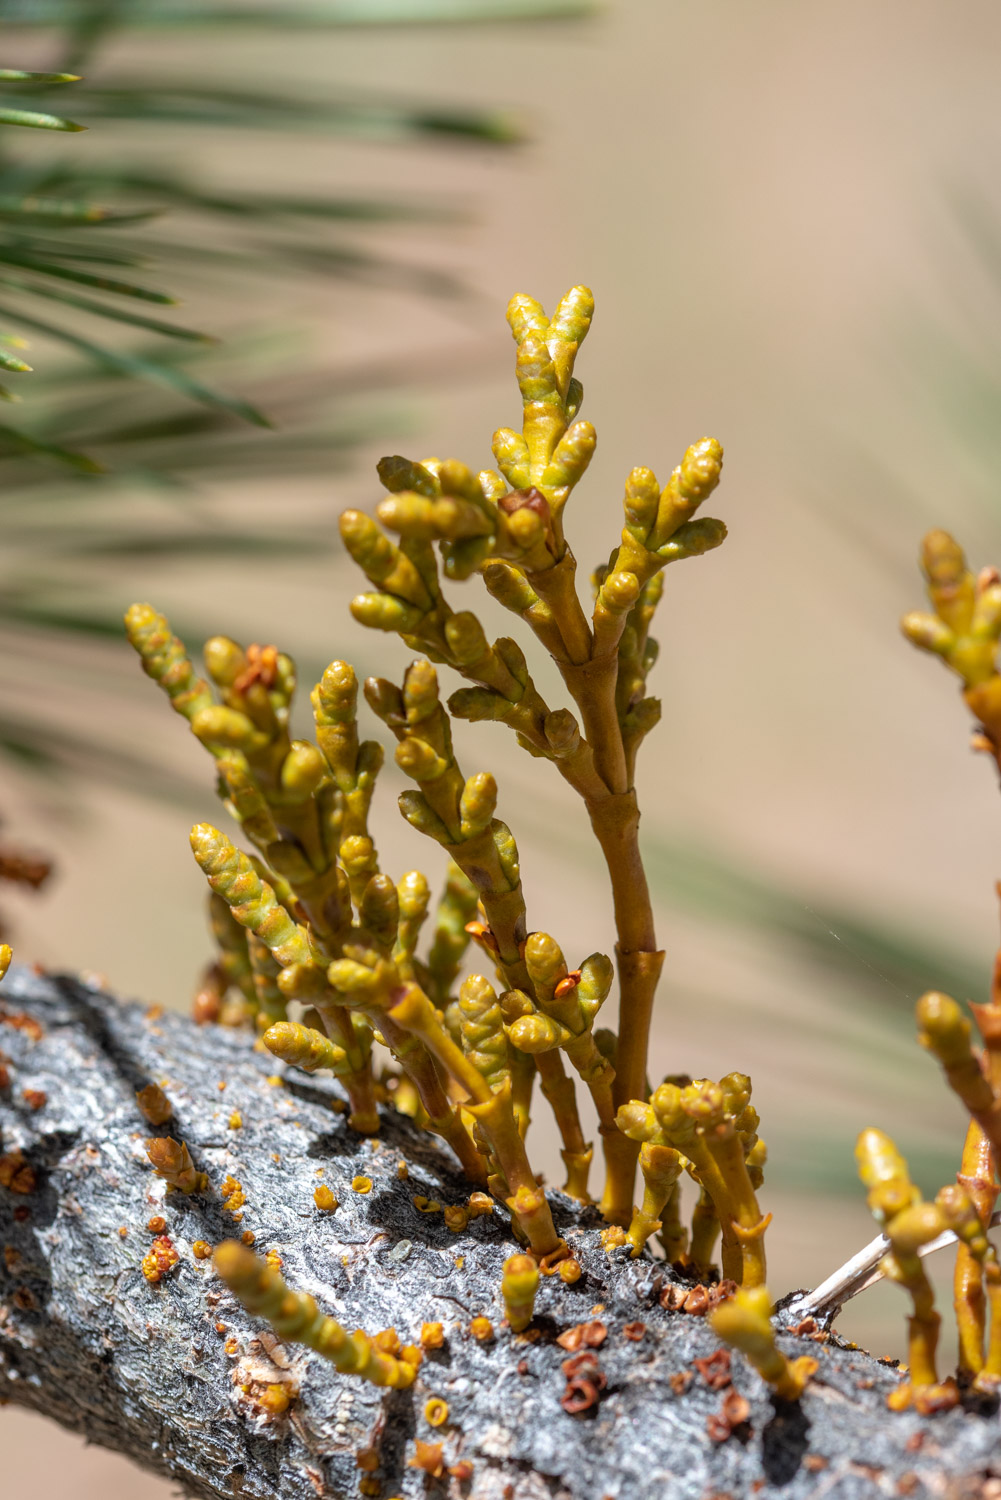 Dwarf Mistletoe (Arceuthobium sp.) on Jeffrey Pine (Pinus jeffreyi)